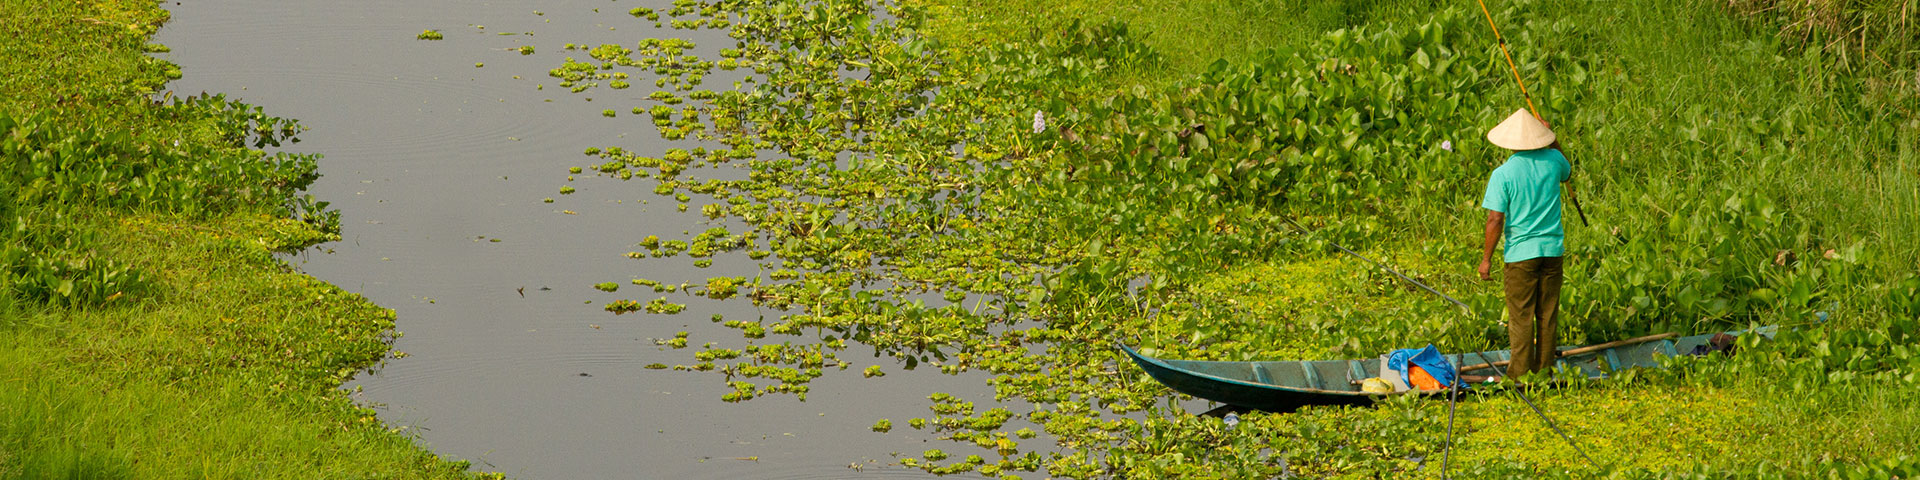 Dans un marais, un homme se tient debout dans un canoë et tient une canne à pêche.